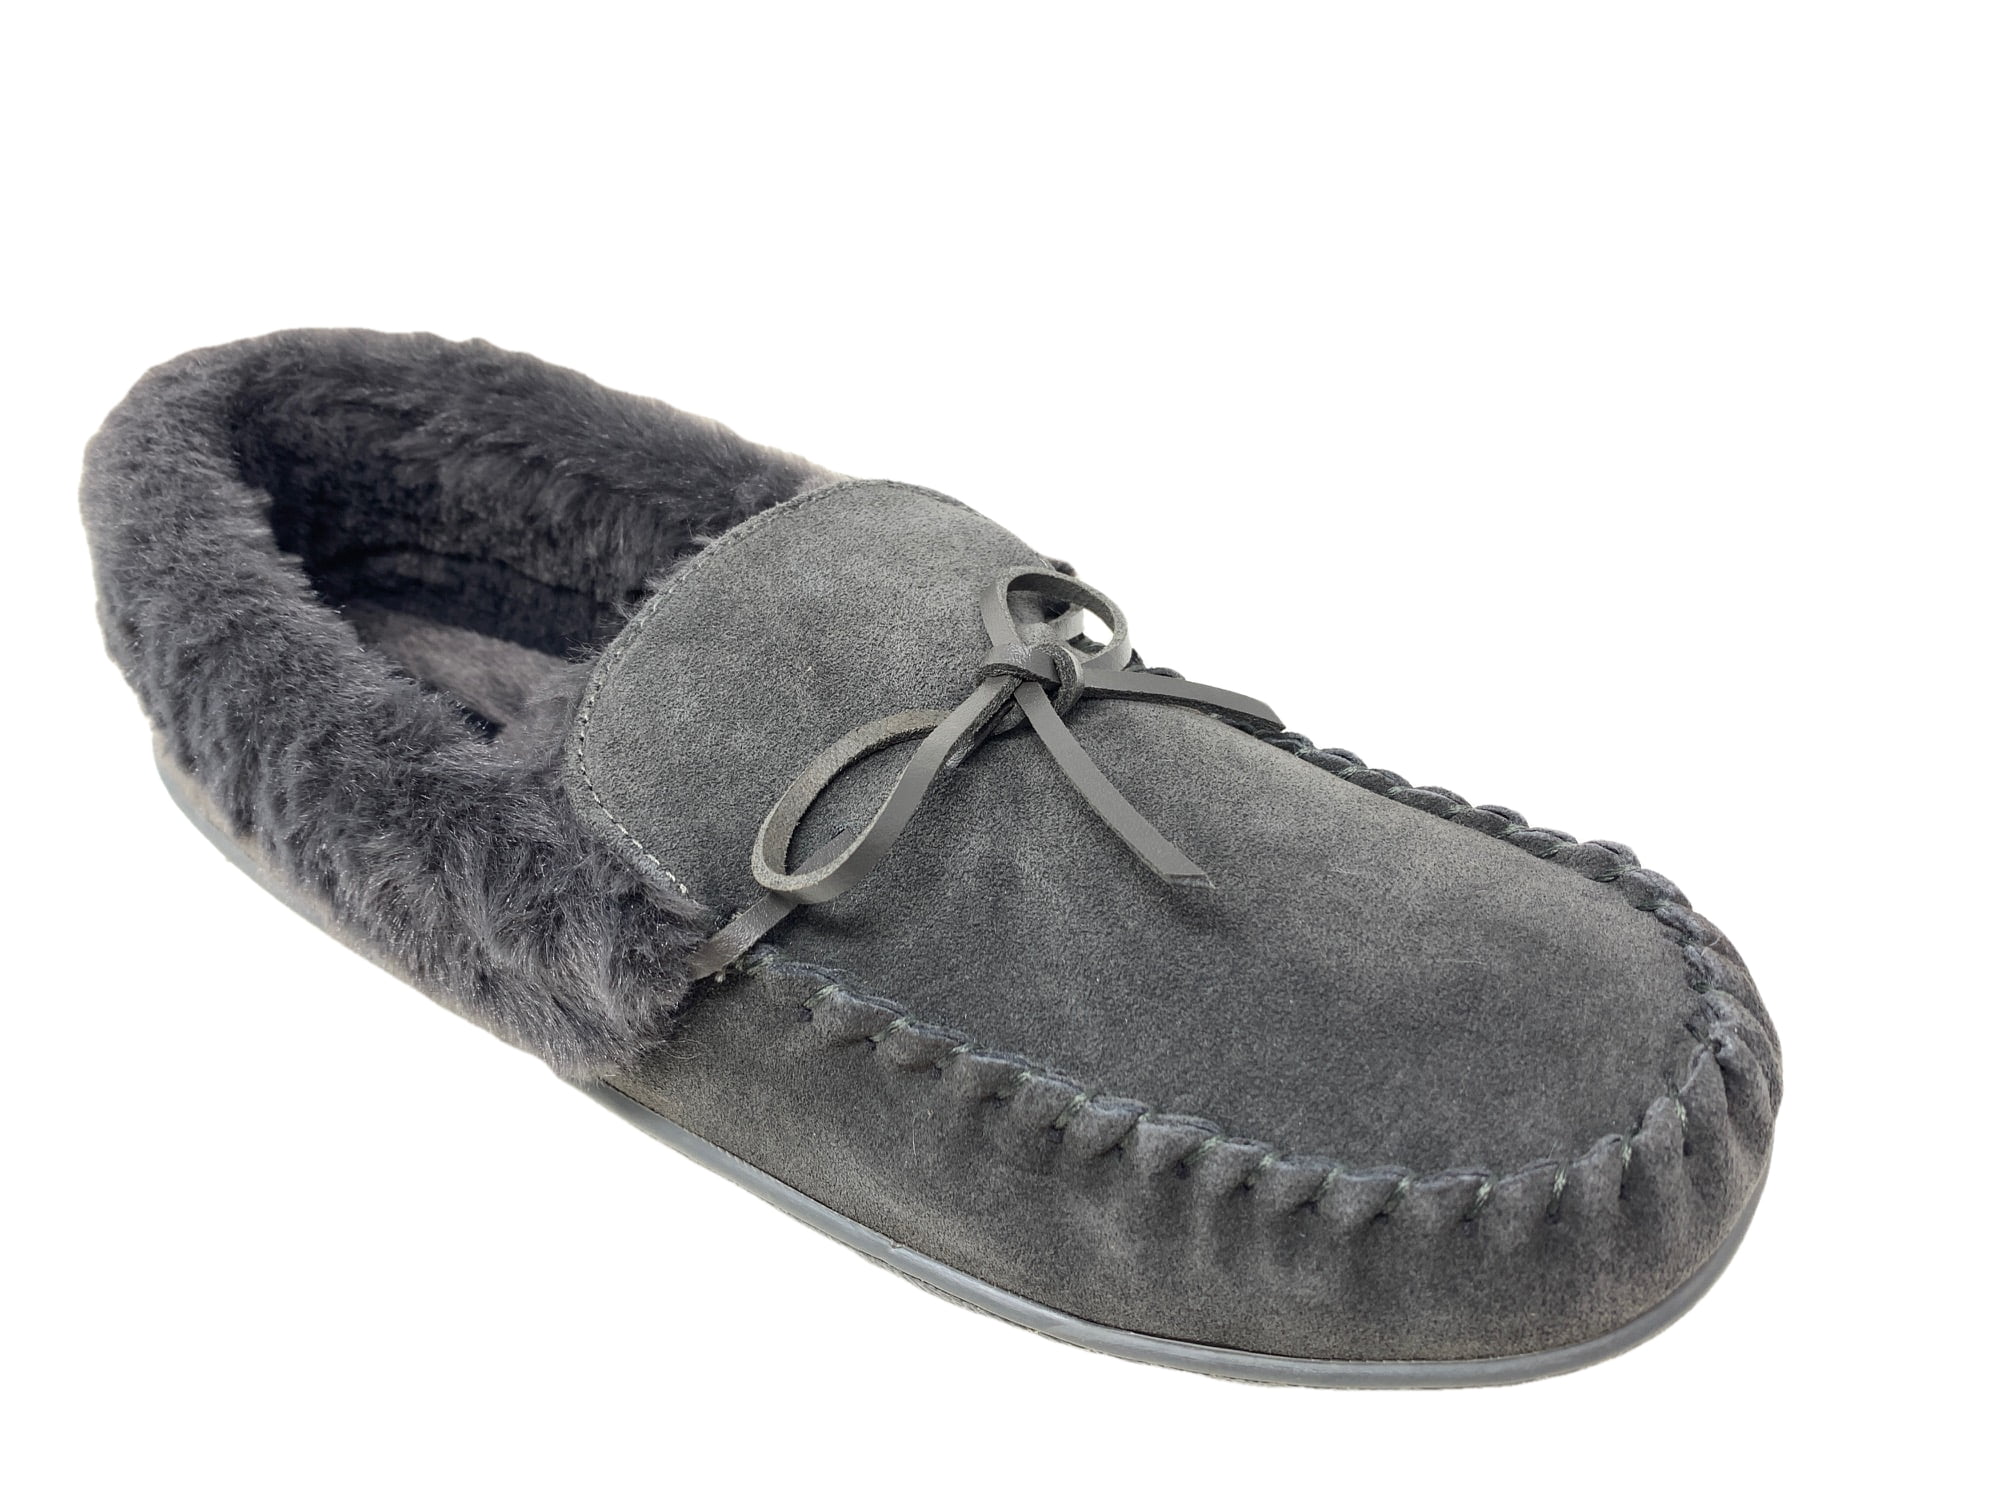 clarks women's indoor outdoor slippers